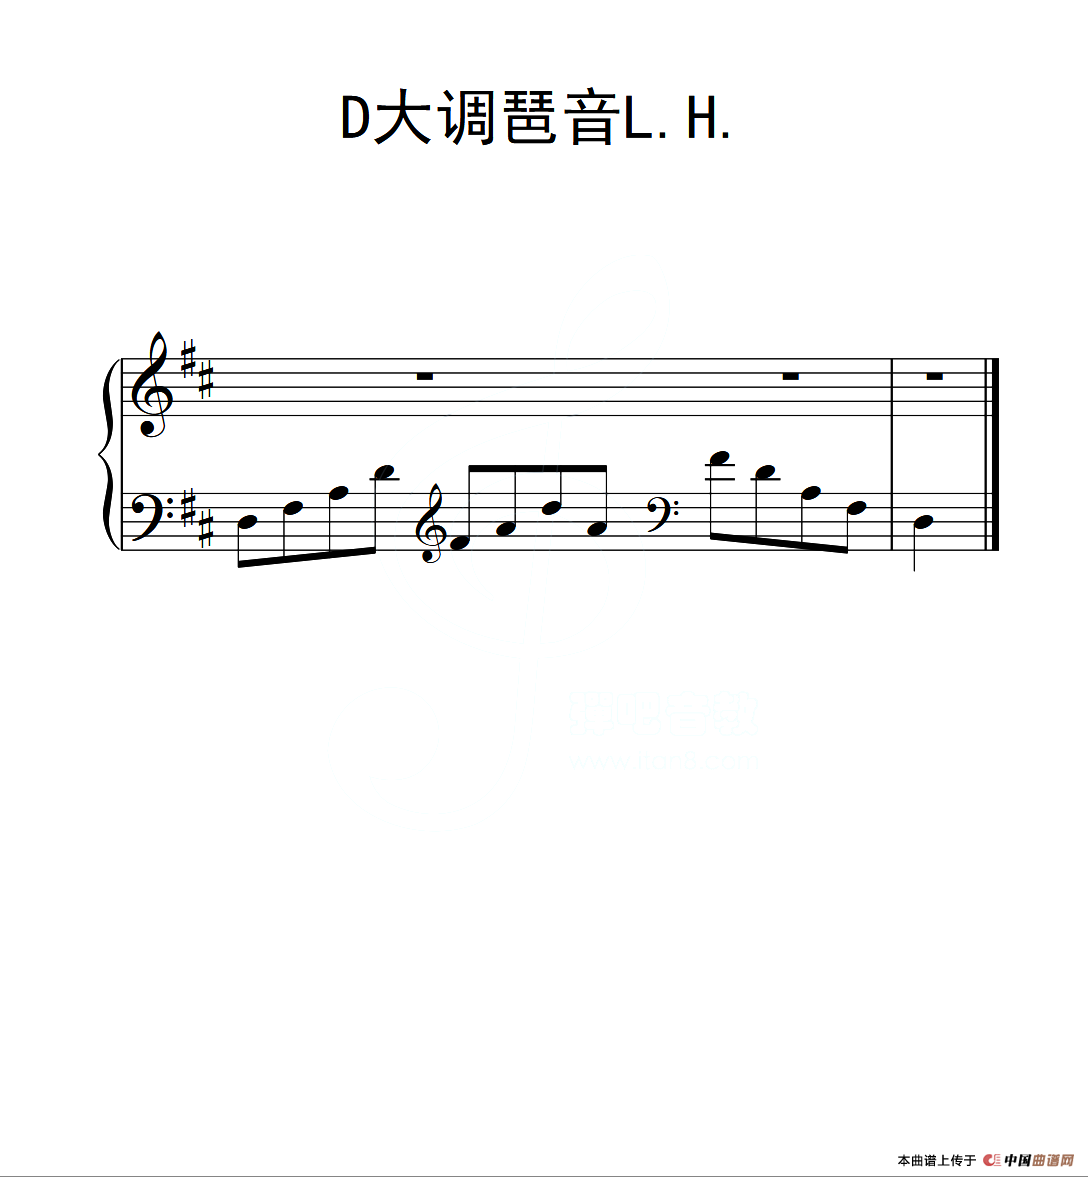 第二级 D大调琶音L H（中国音乐学院钢琴考级作品